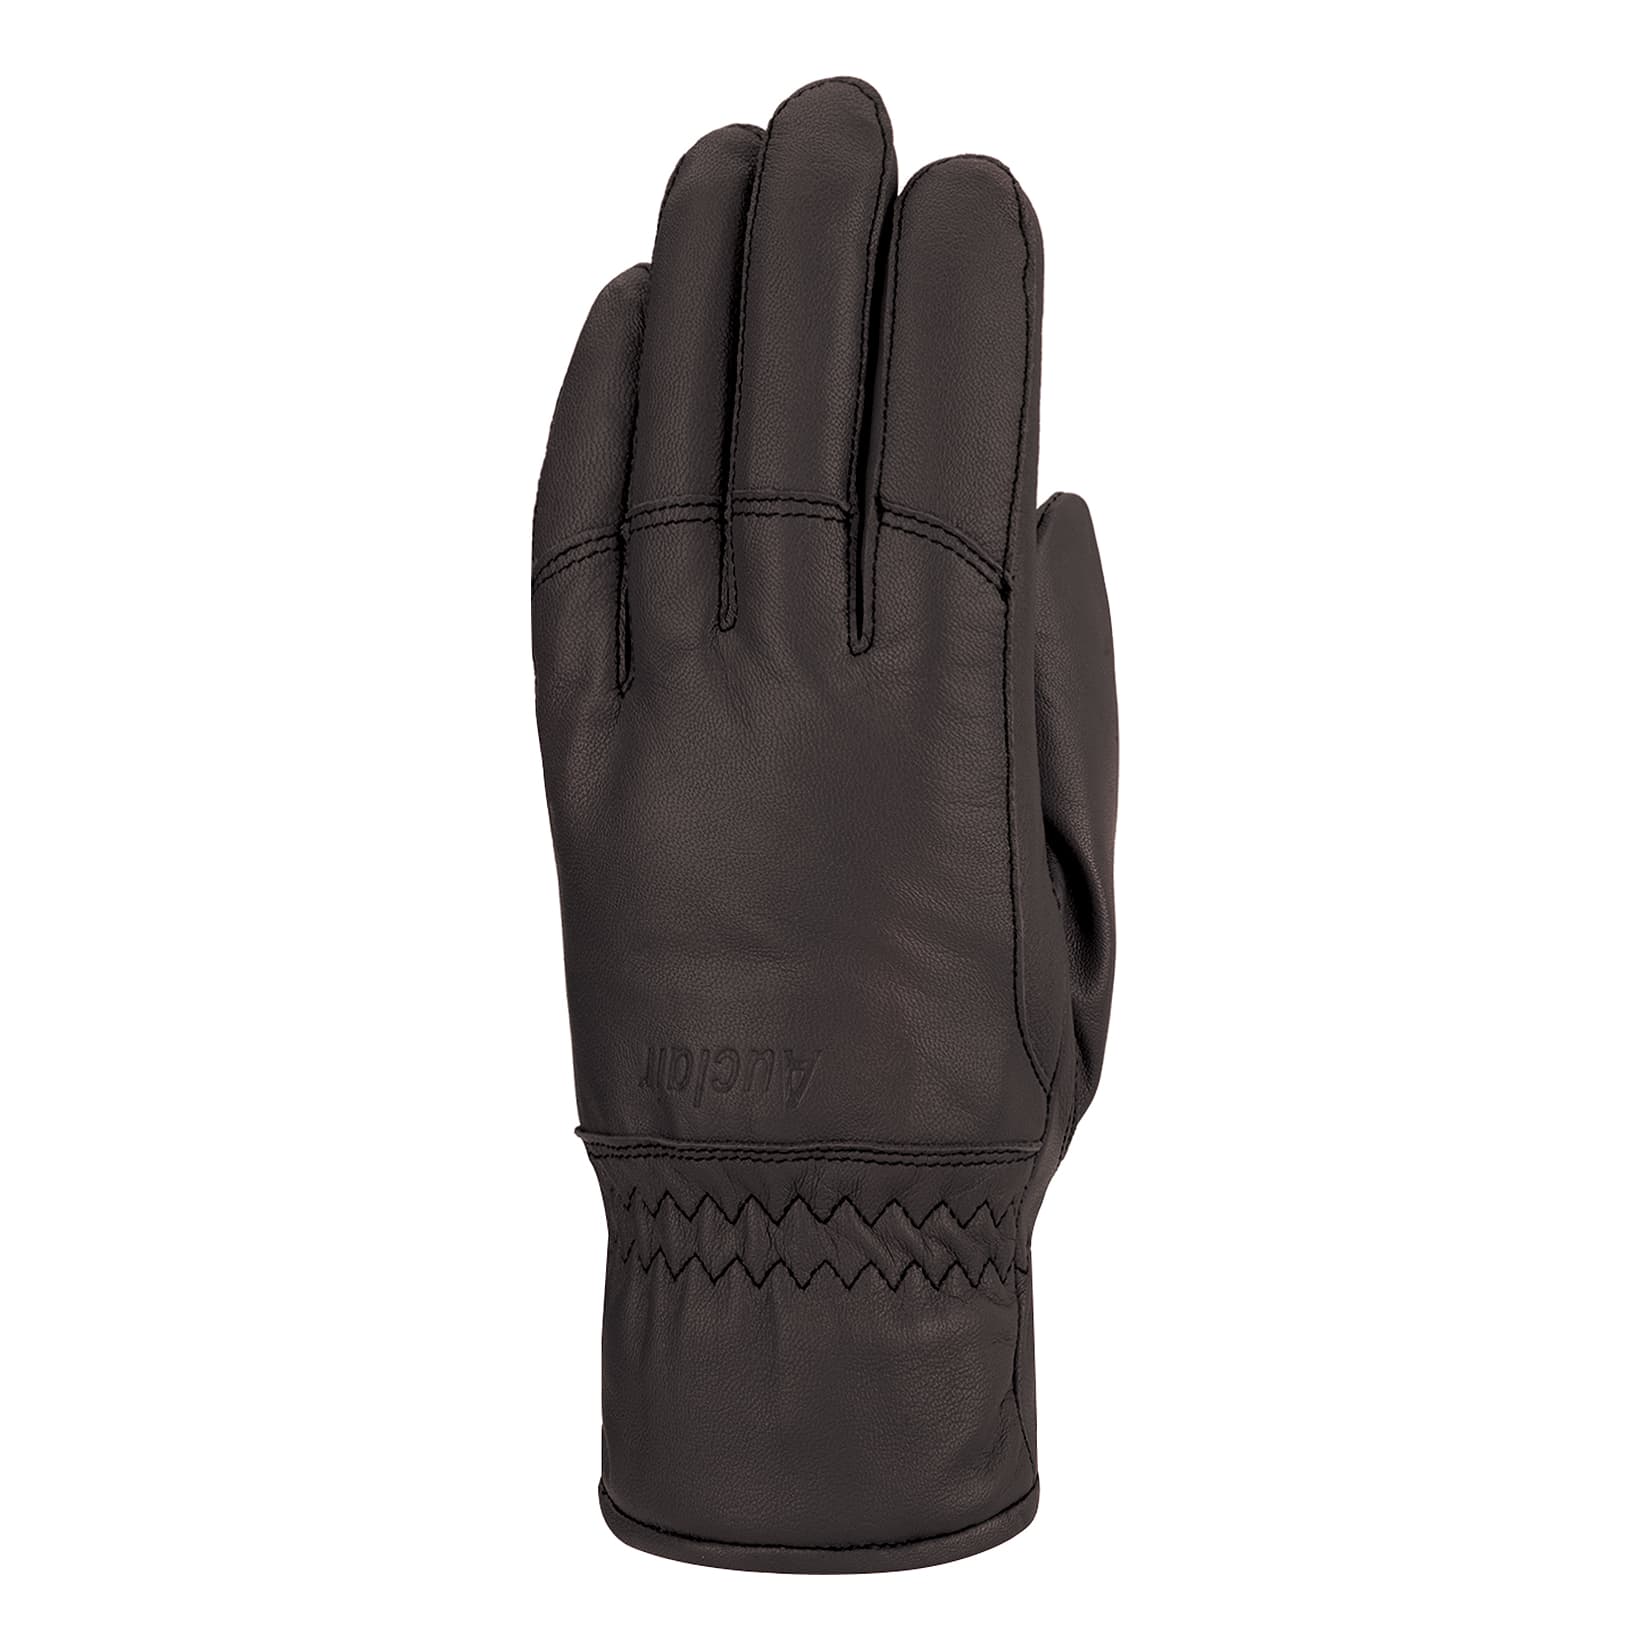 Auclair® Women’s Sportster Glove - Black